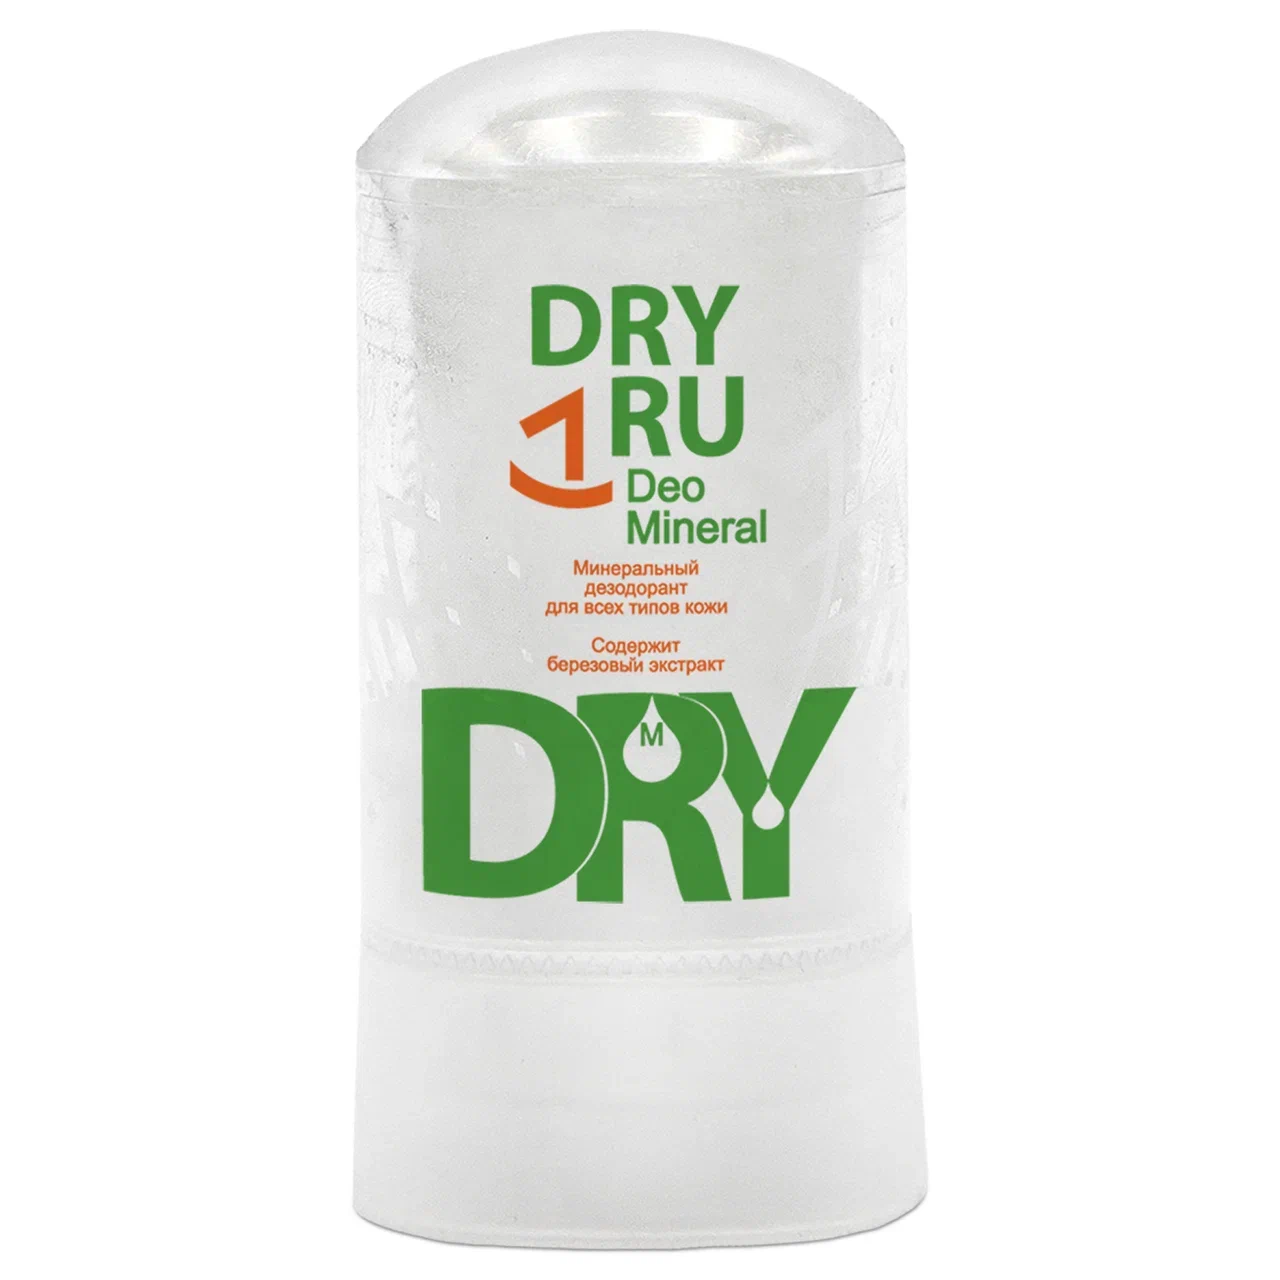 Дезодорант DRY RU женский мужской, стик от пота и запаха для подмышек, рук и ног, 60 г дезодорант dry ru женский мужской стик от пота и запаха для подмышек рук и ног 60 г